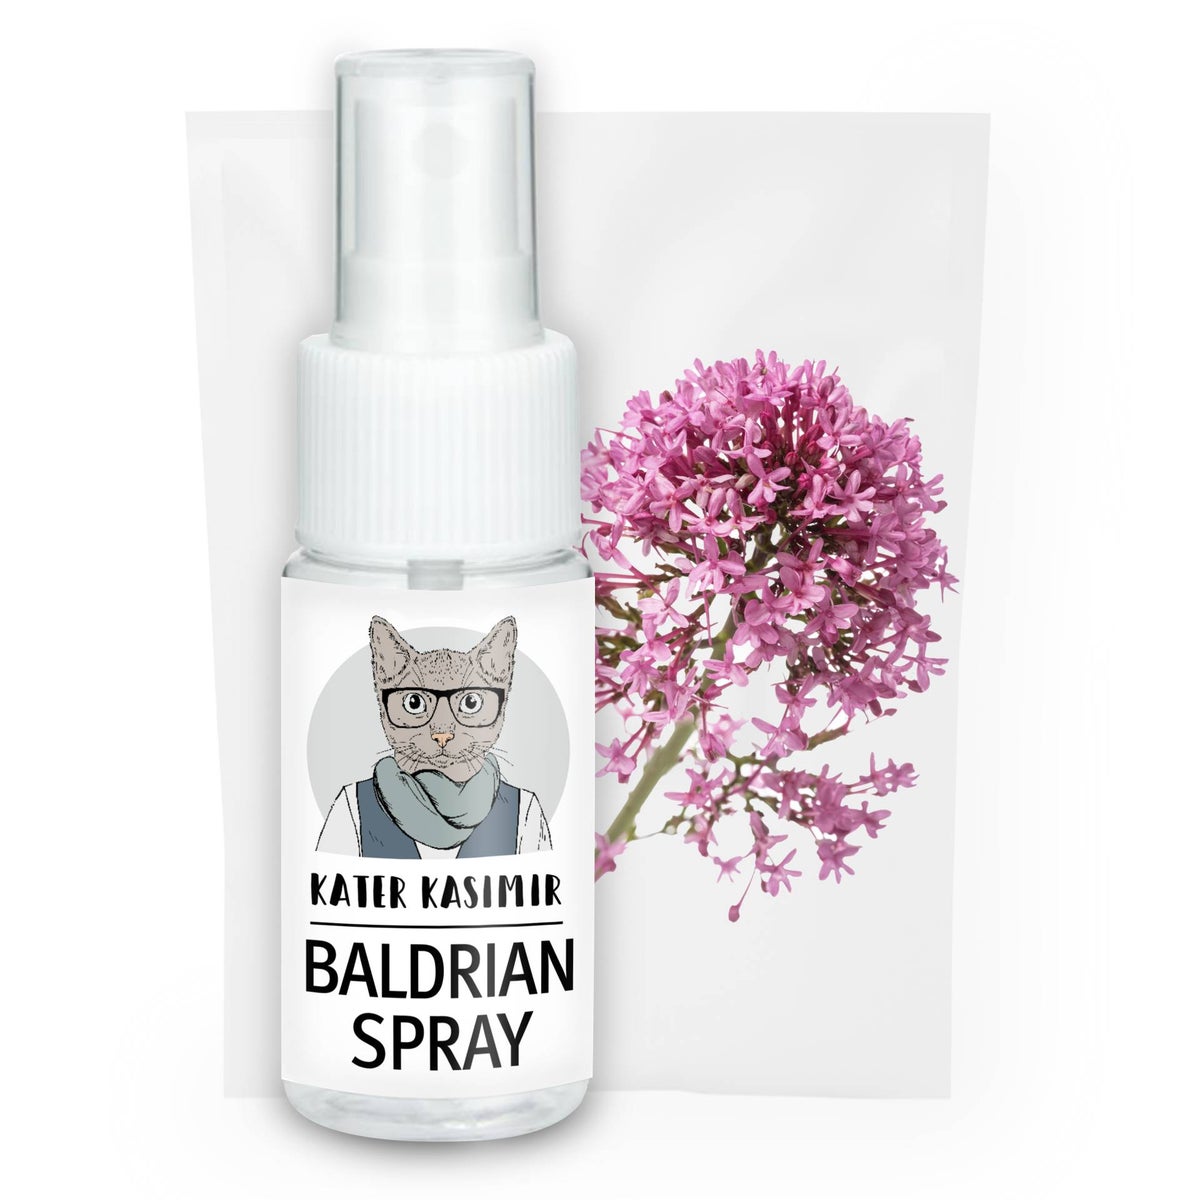 Baldrian Spray für Katzen. Zum Auftragen auf einen Kratzbaum oder auf Katzenspielzeug. Rein natürlich ohne Zusatzstoffe